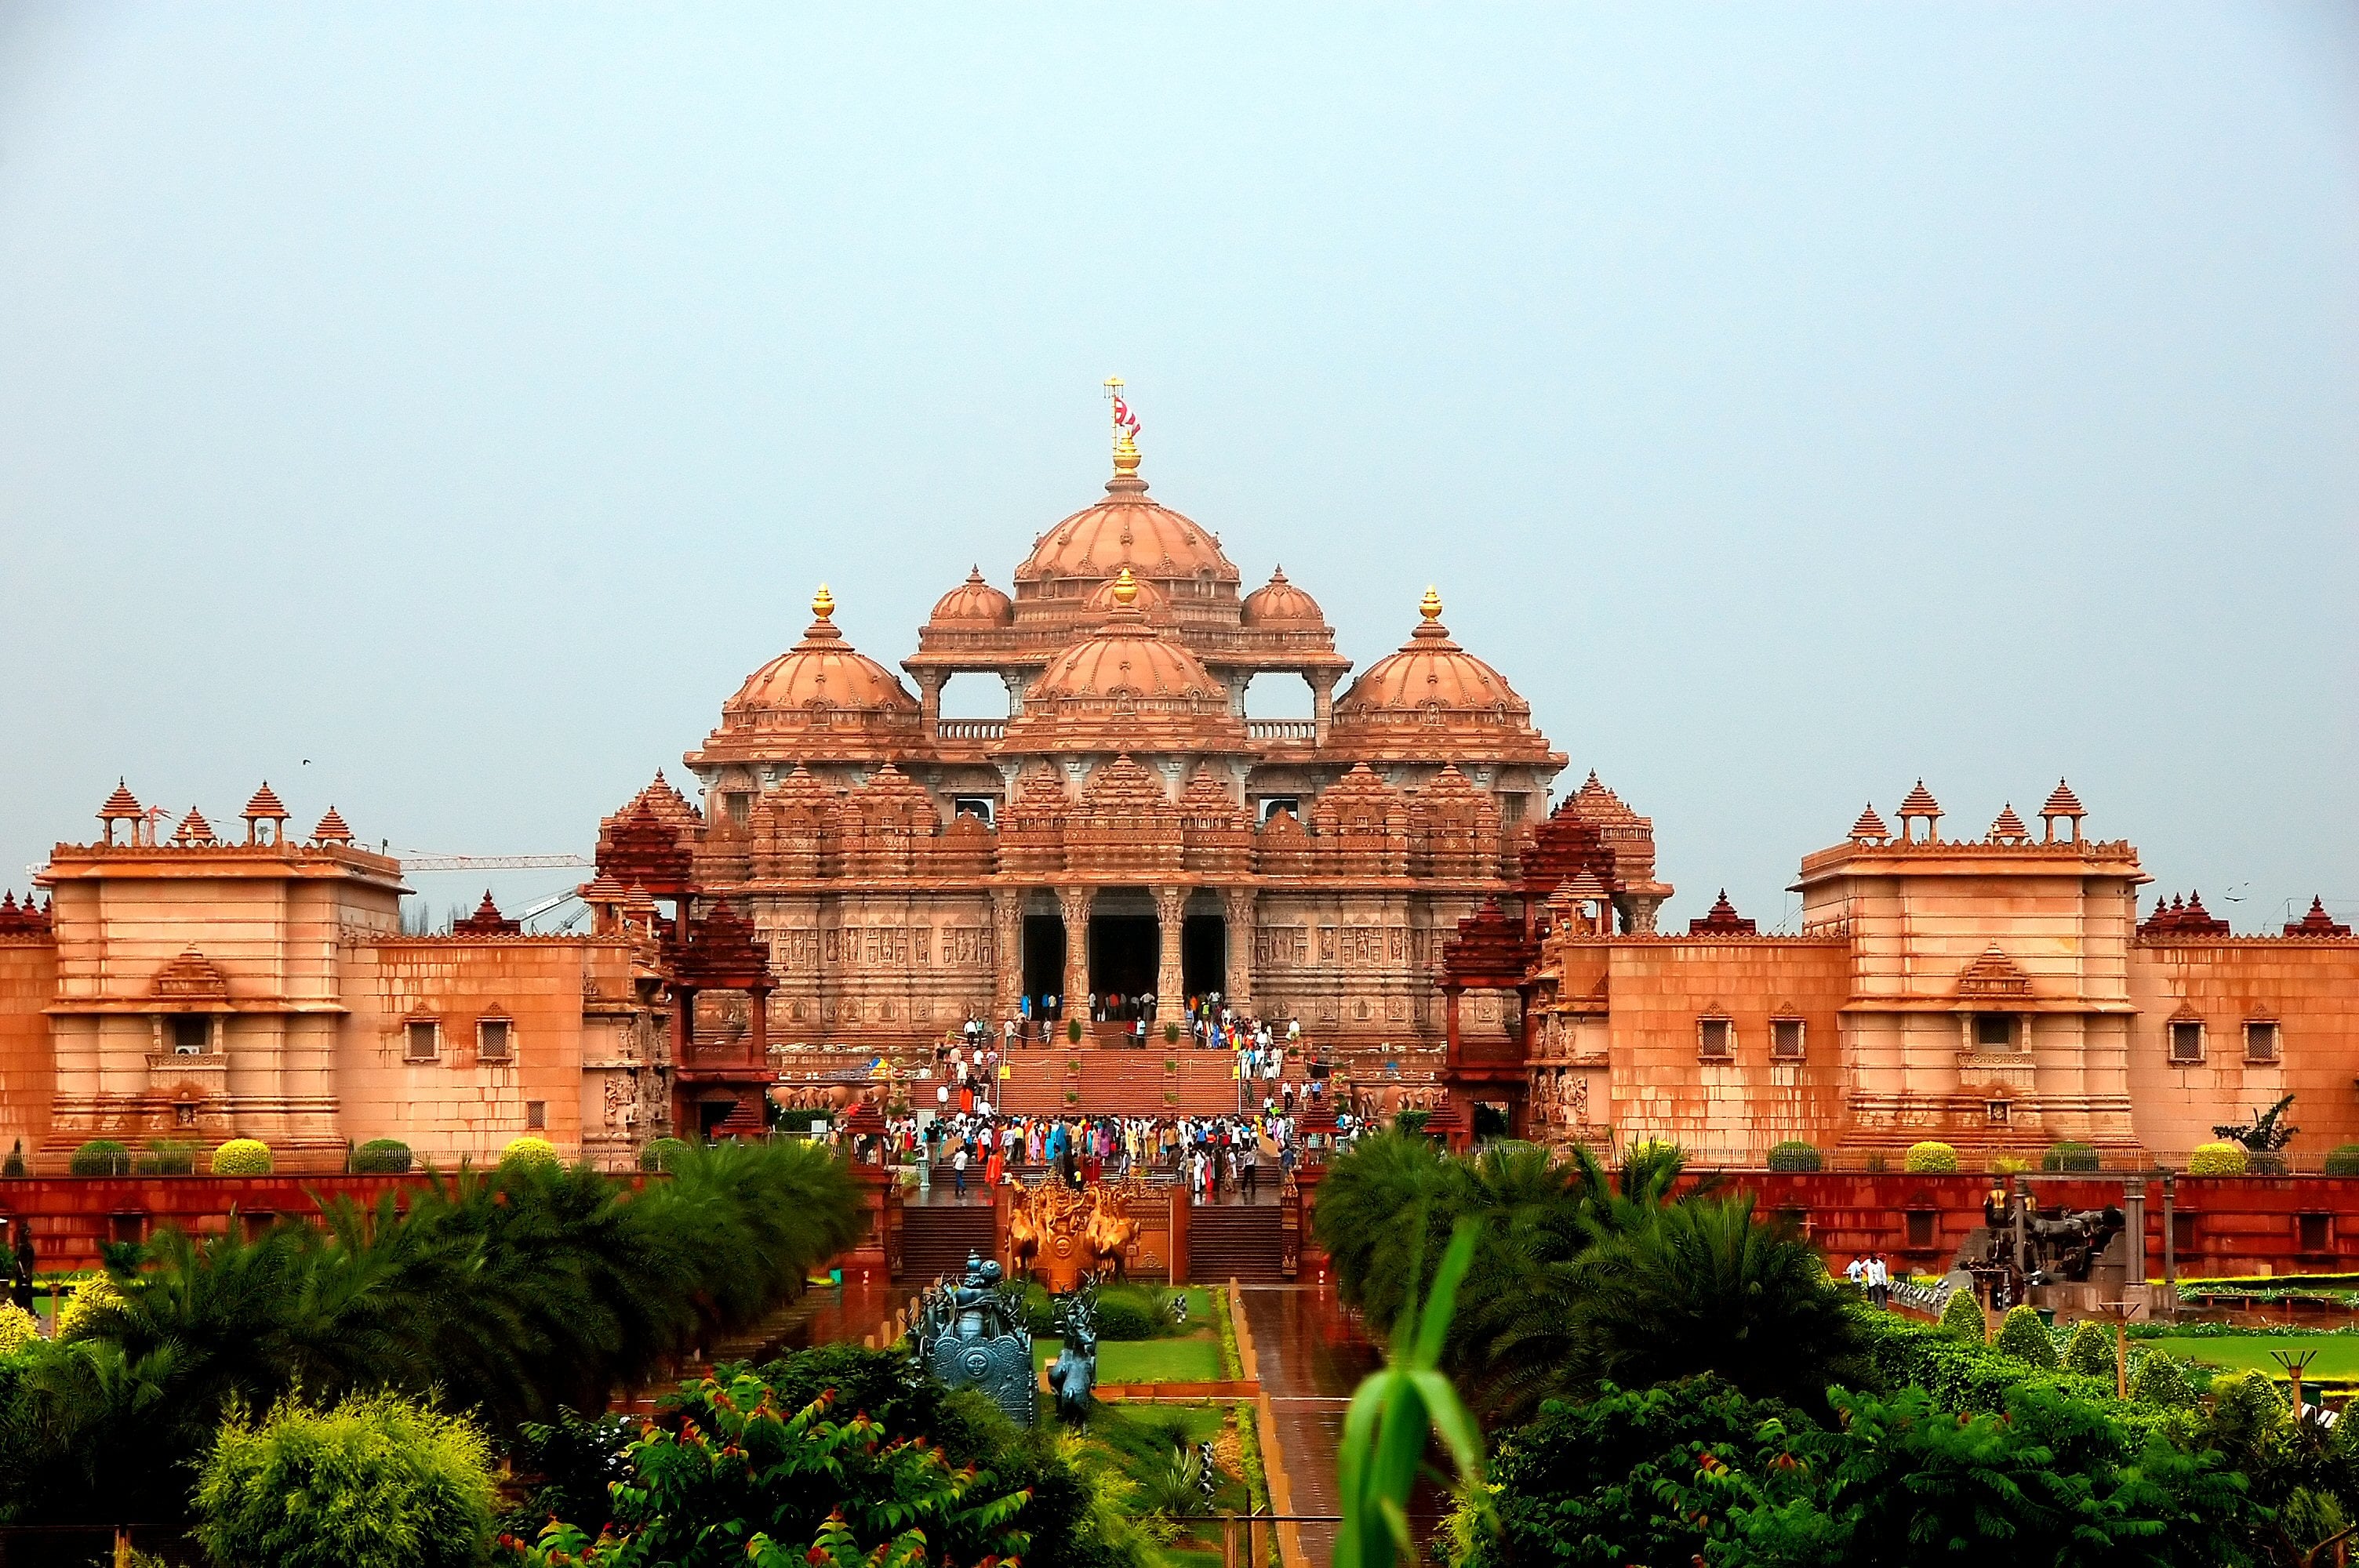 Akshardham Temple in Delhi, India